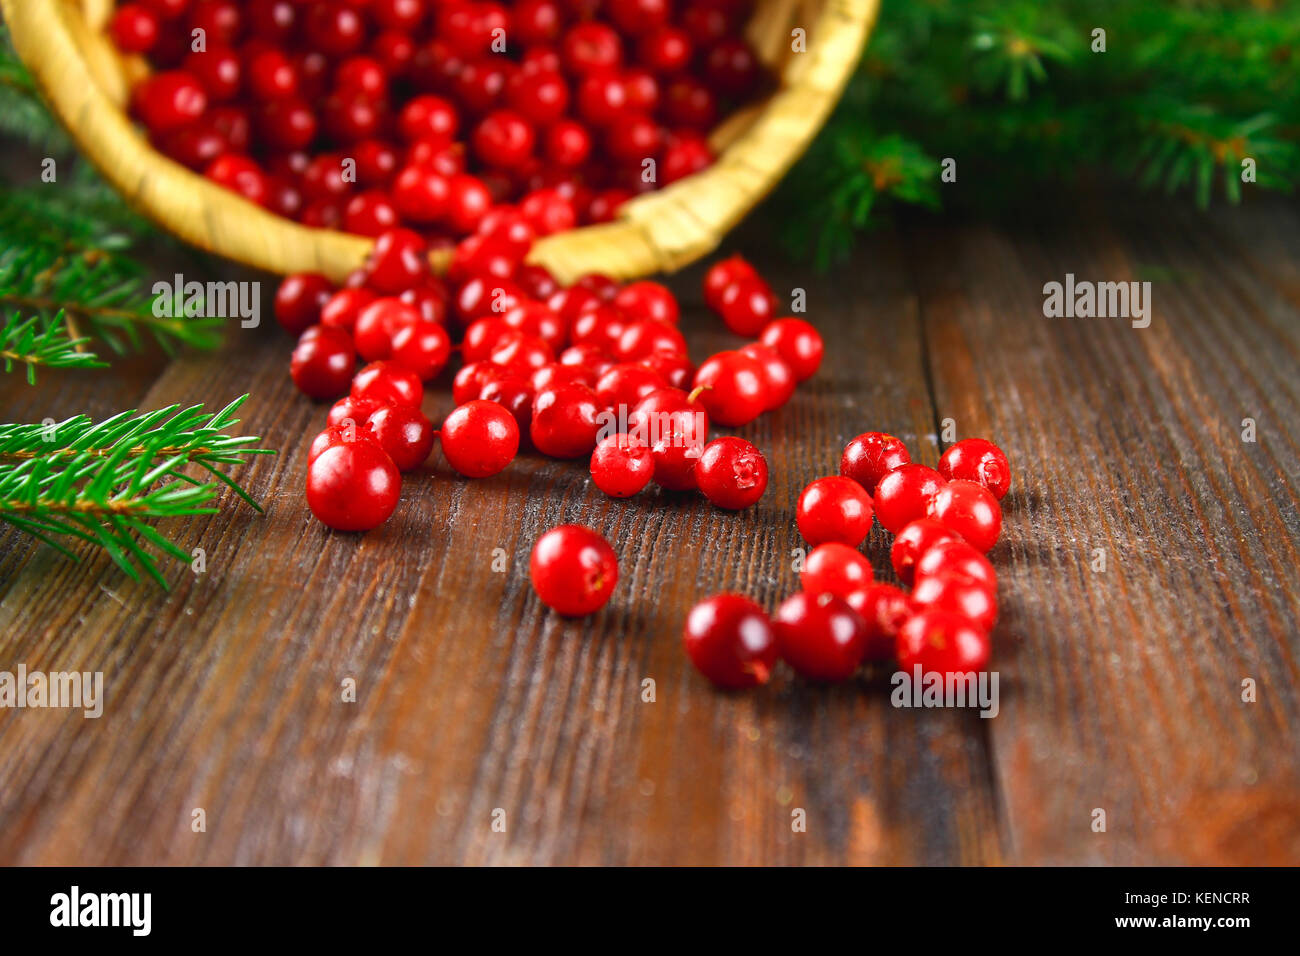 Cowberry, foxberry, arándano, Arándano rojo sorbos de la cesta sobre una tabla de madera marrón. rodeado de ramas de abeto. Foto de stock